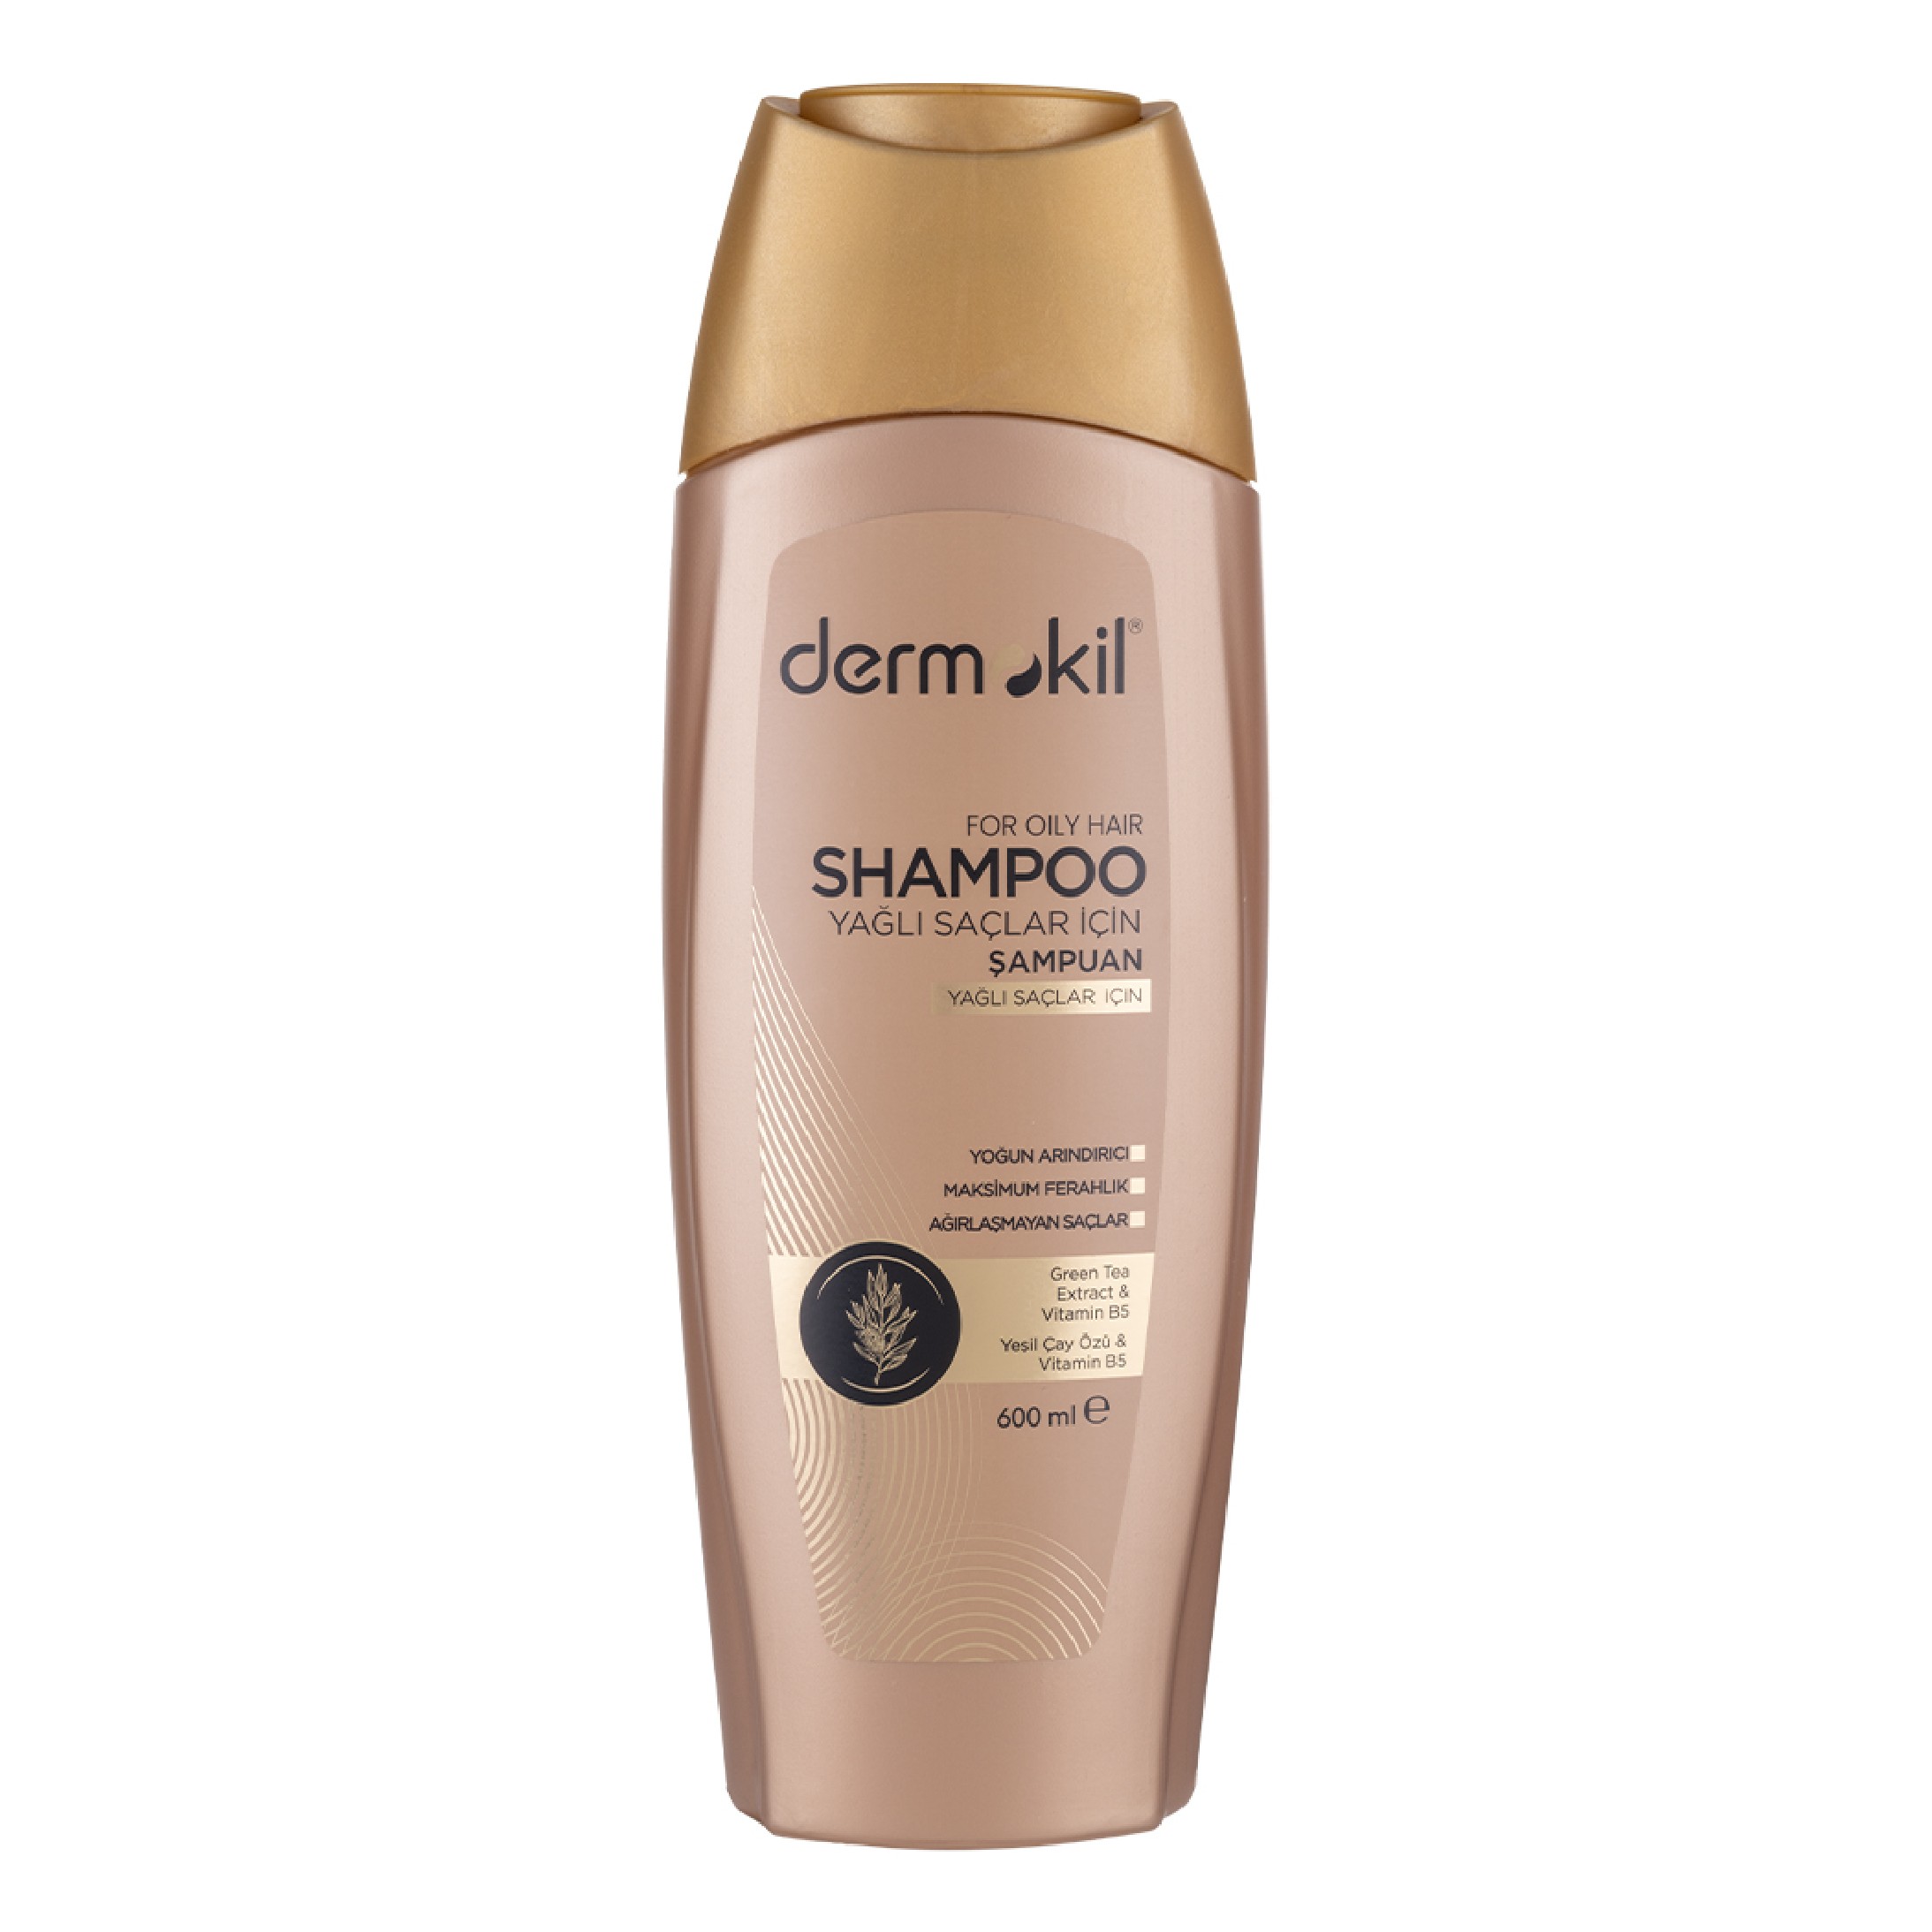 Yağlı Saçlar İçin Şampuan 600 ml															